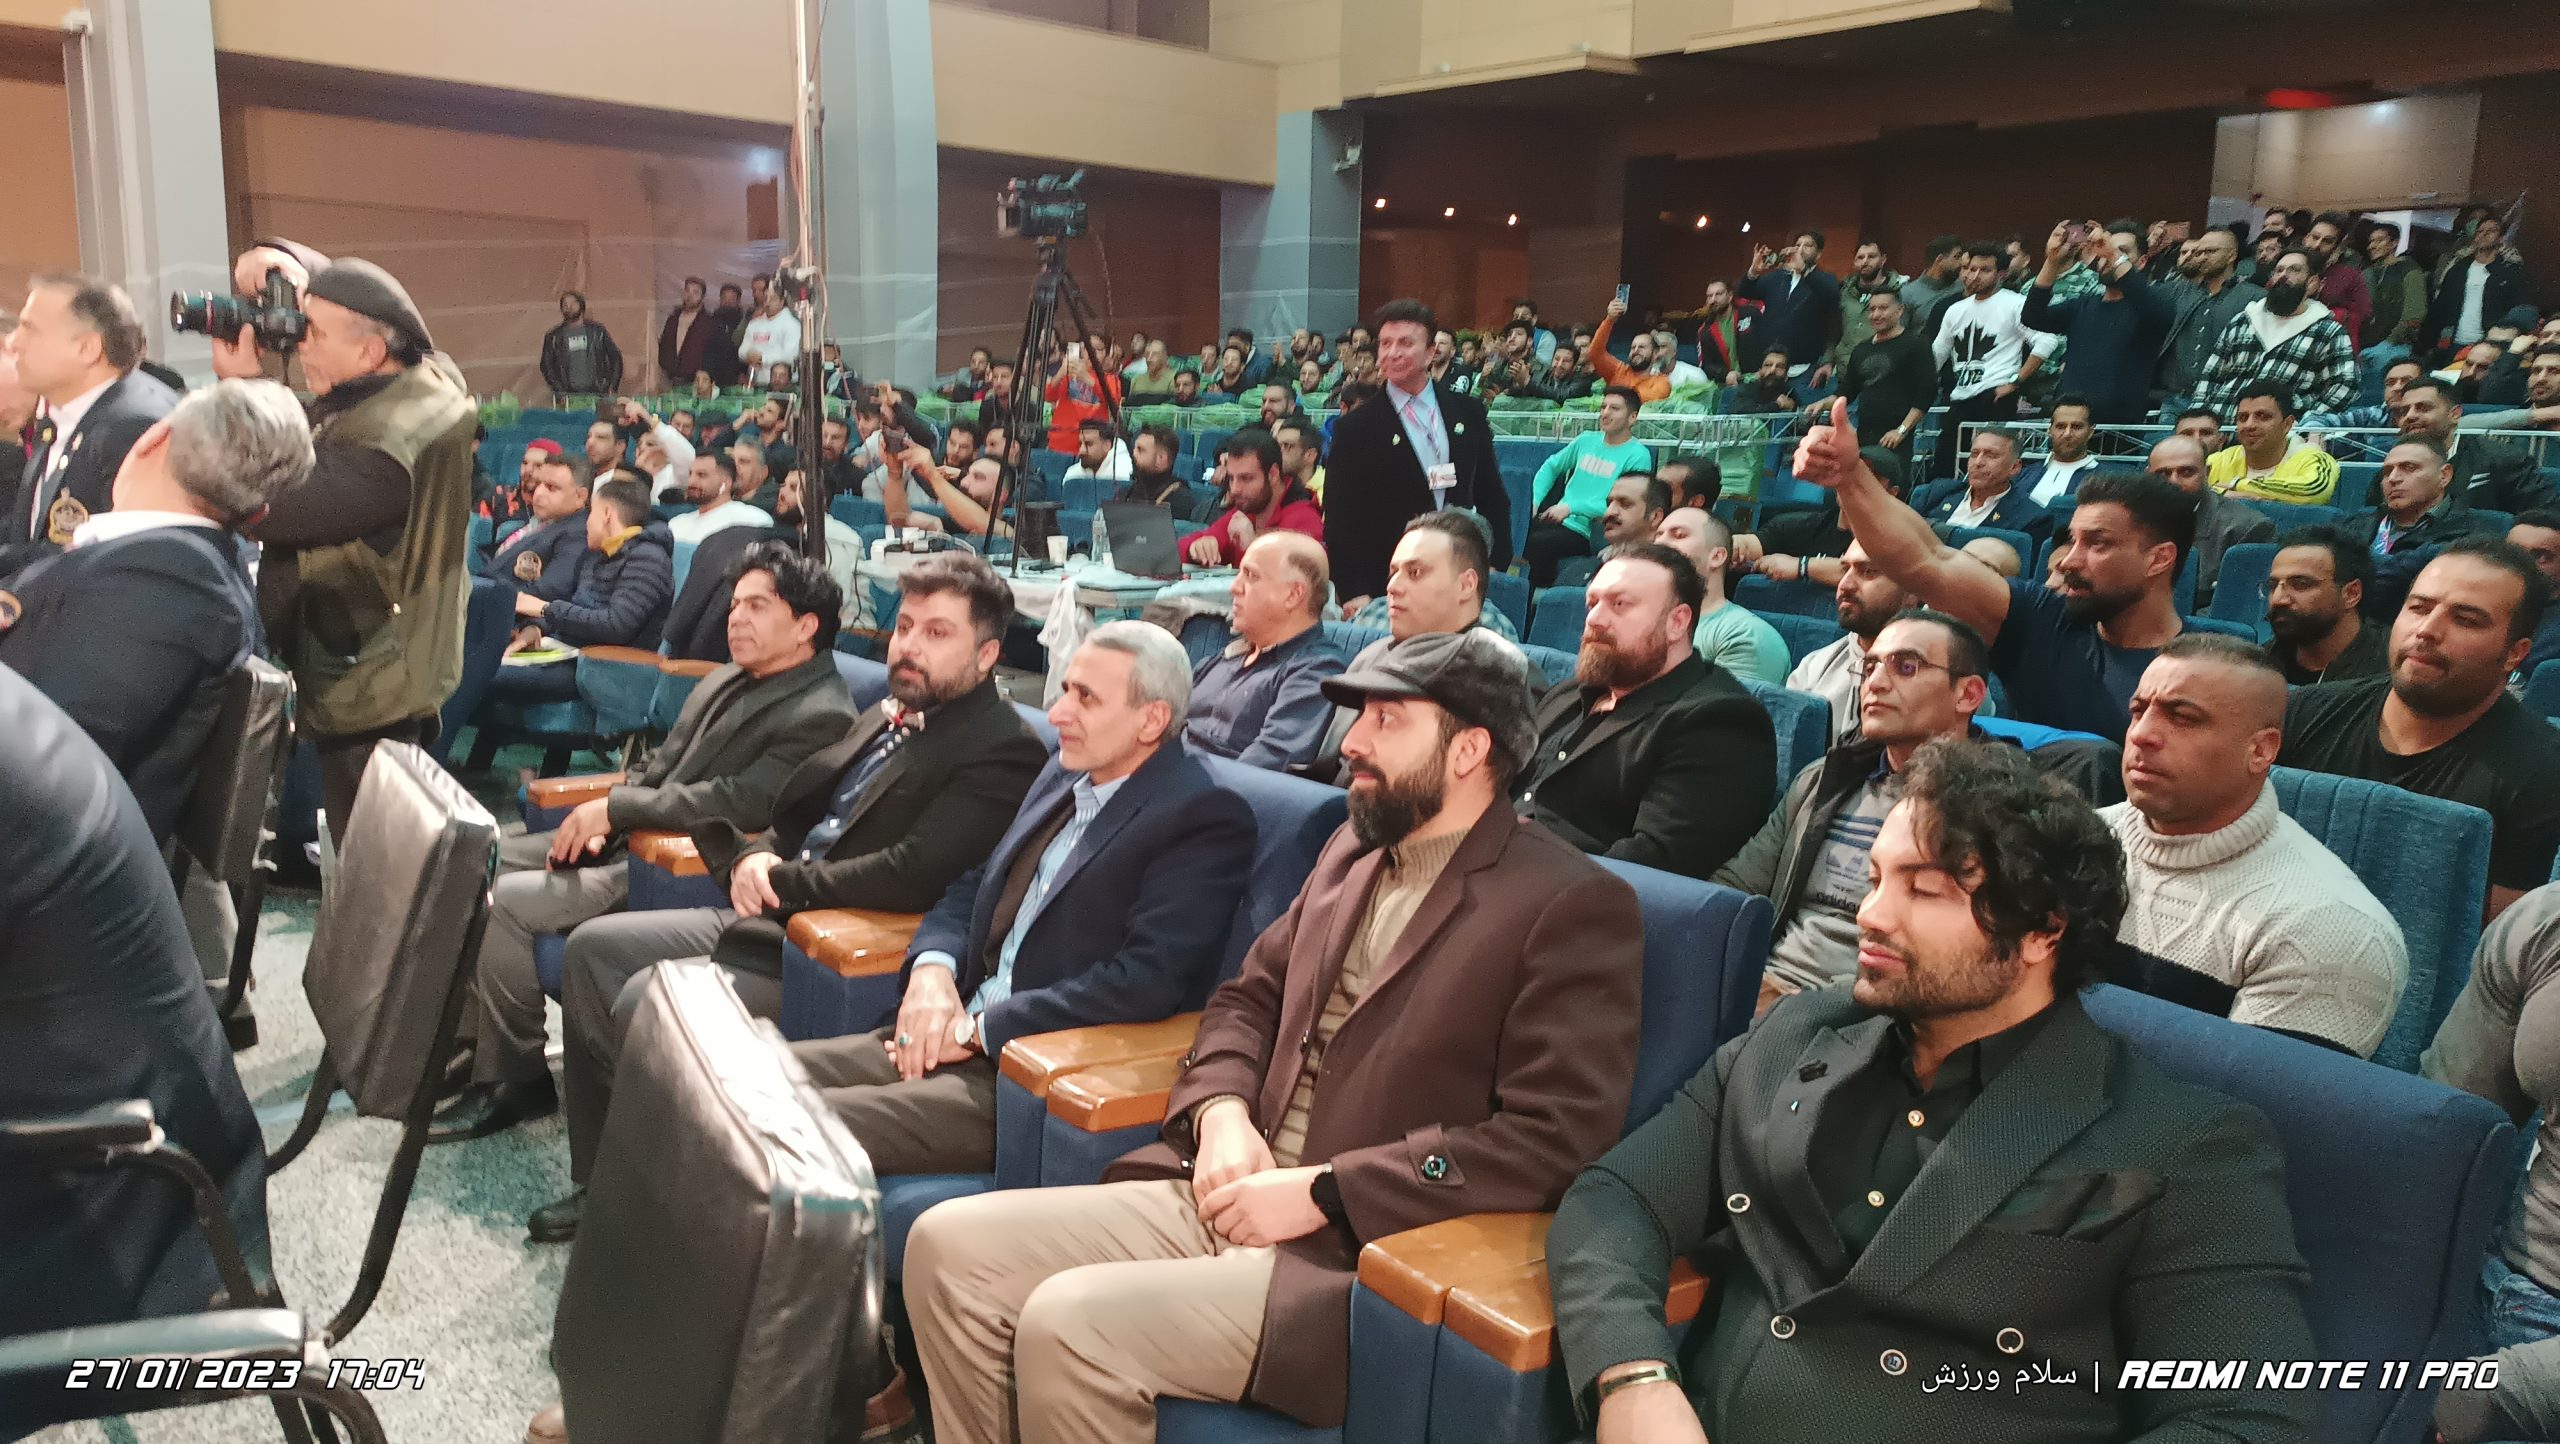 حضور دکتر مقتدایی در مسابقات پرورش اندام استان اصفهان